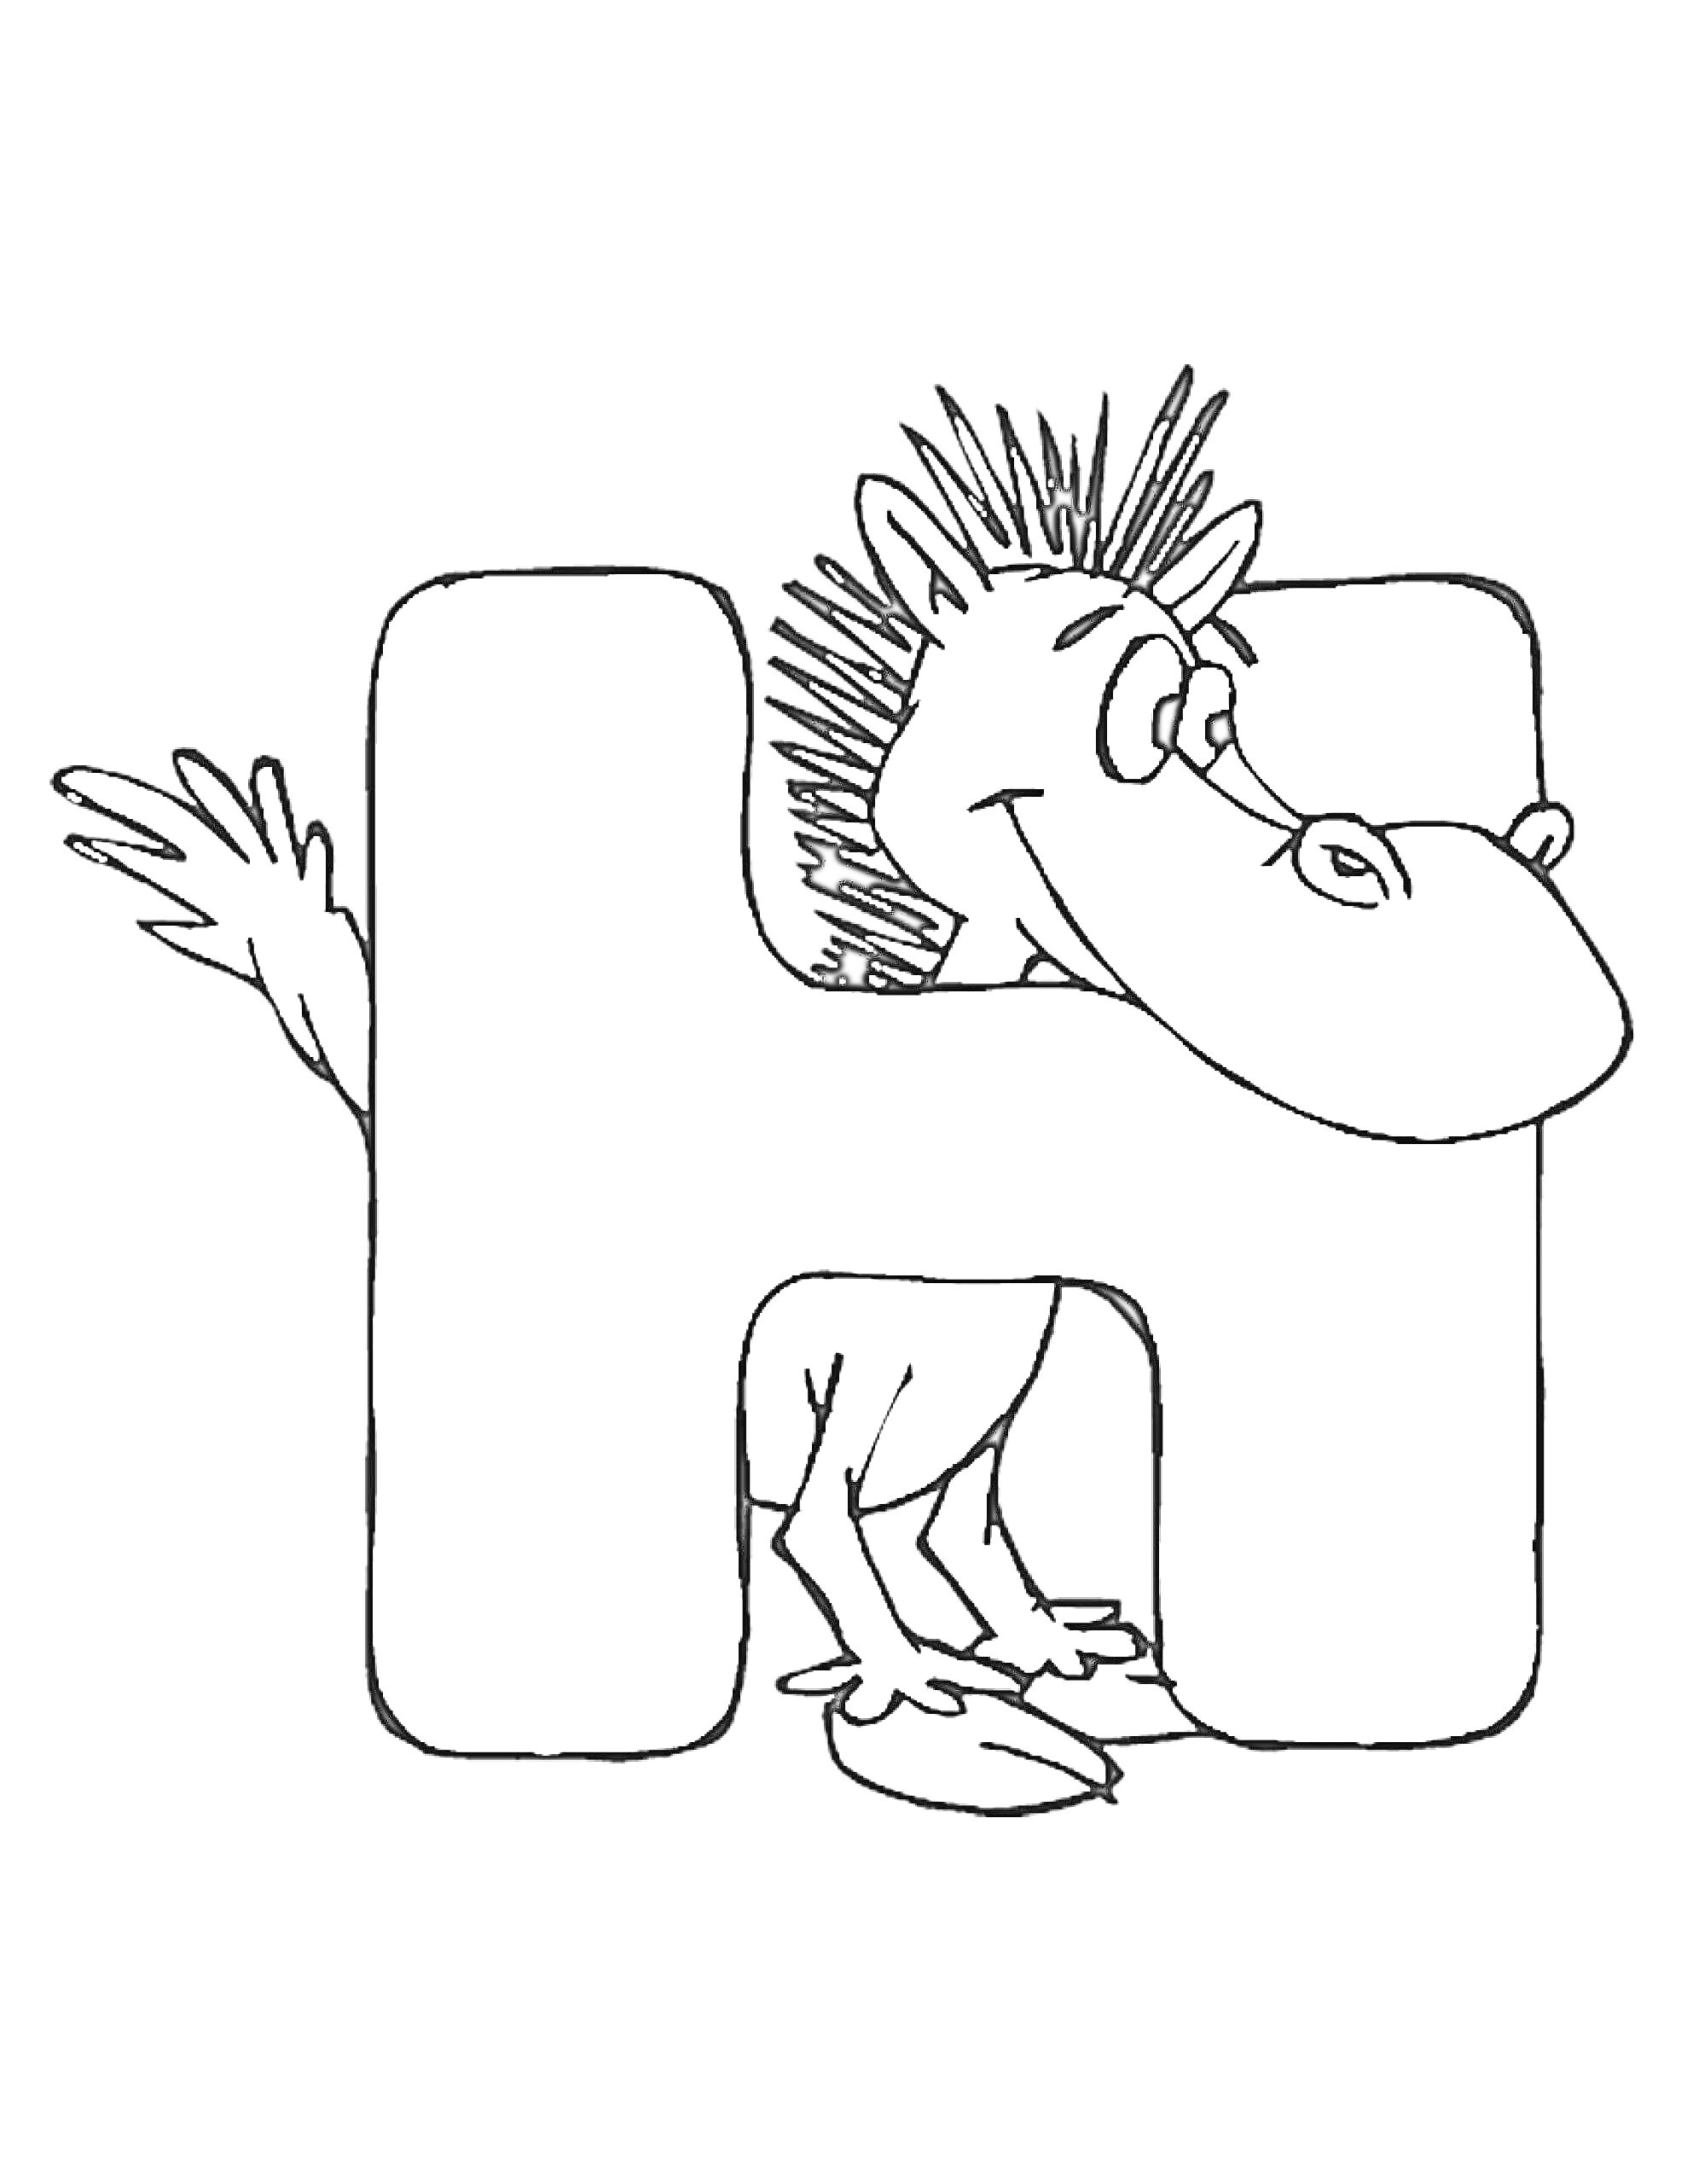 Раскраска Буква H с мифическим существом (дракончиком) выходящим из буквы